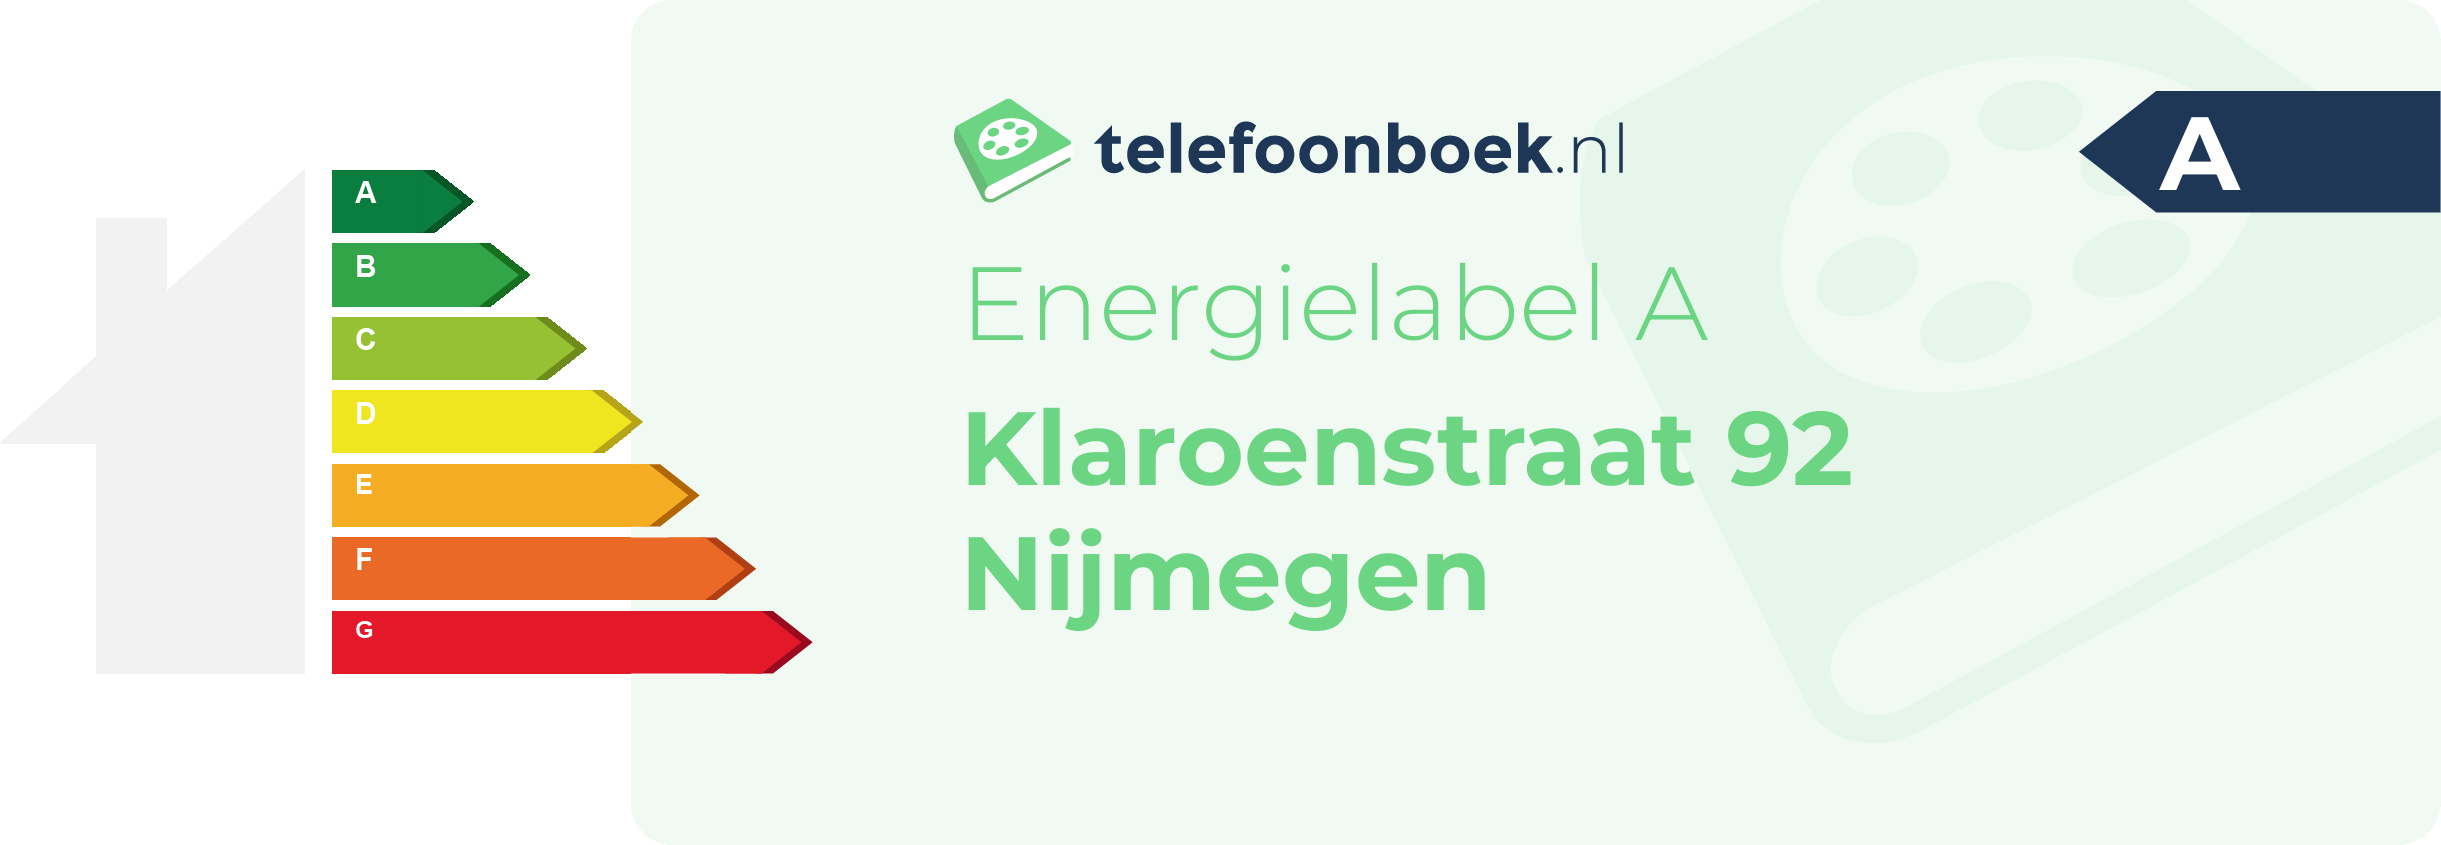 Energielabel Klaroenstraat 92 Nijmegen